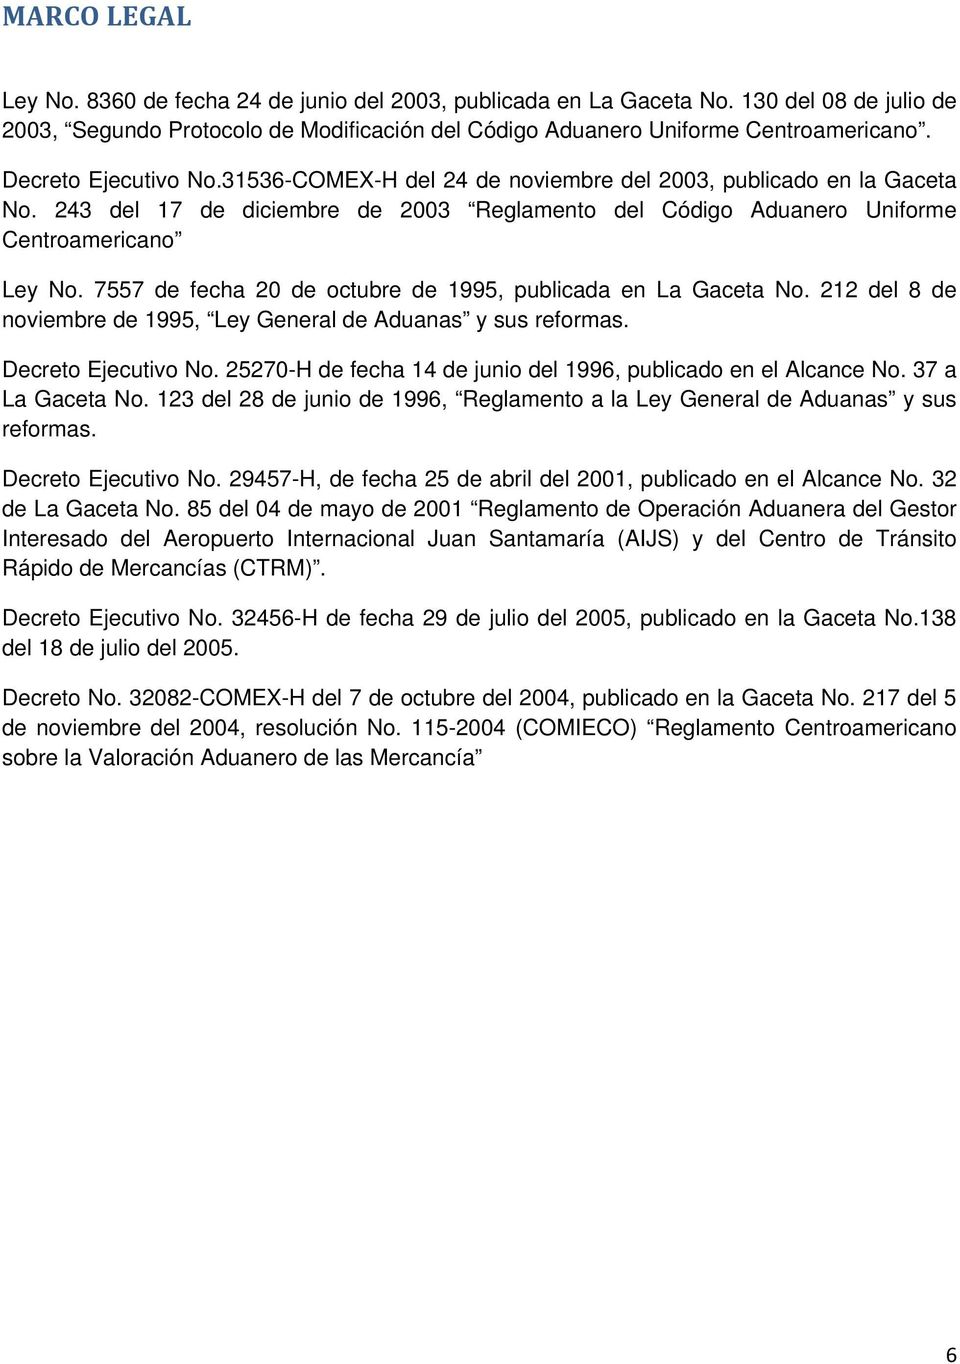 7557 de fecha 20 de octubre de 1995, publicada en La Gaceta No. 212 del 8 de noviembre de 1995, Ley General de Aduanas y sus reformas. Decreto Ejecutivo No.